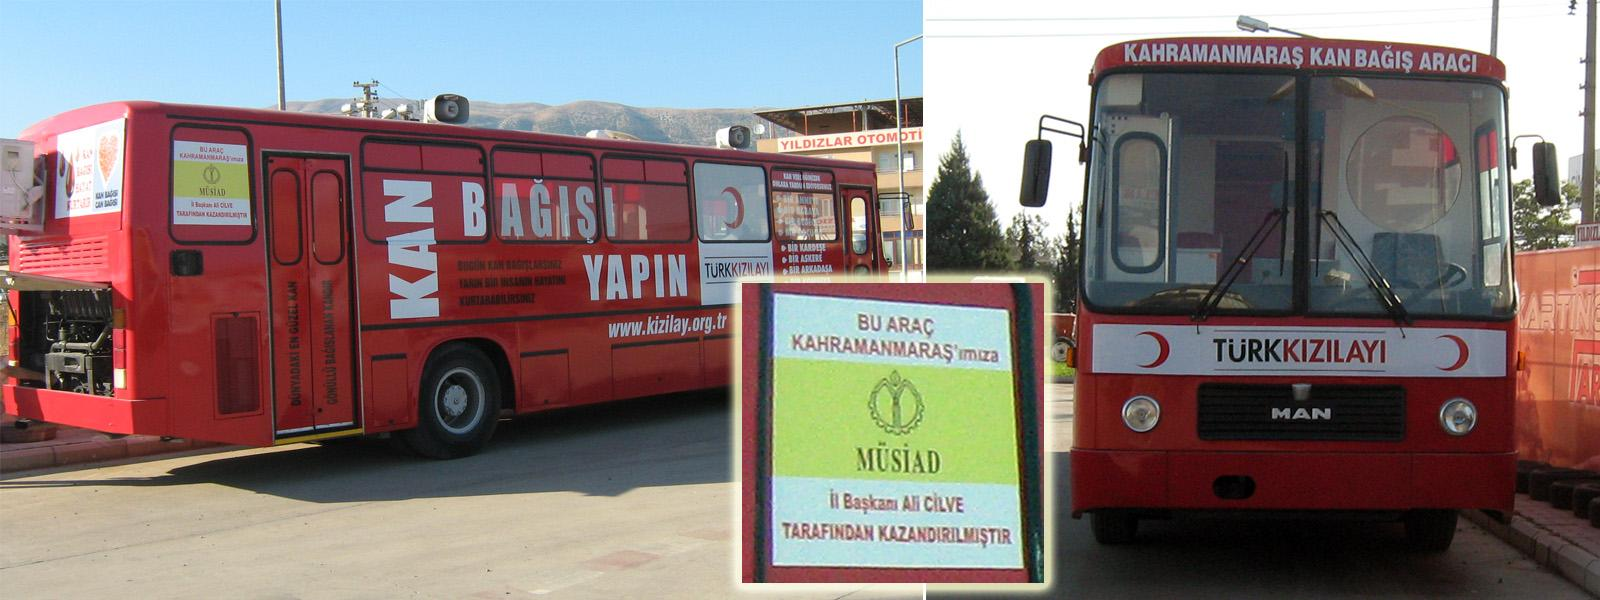 Gezici Kan Bağışı Aracı (Kahramanmaraş) K.Maraş KBM tarafından kullanılan kan bağış otobüsü 2011 yıl sonu itibari ile hizmete girmiştir.